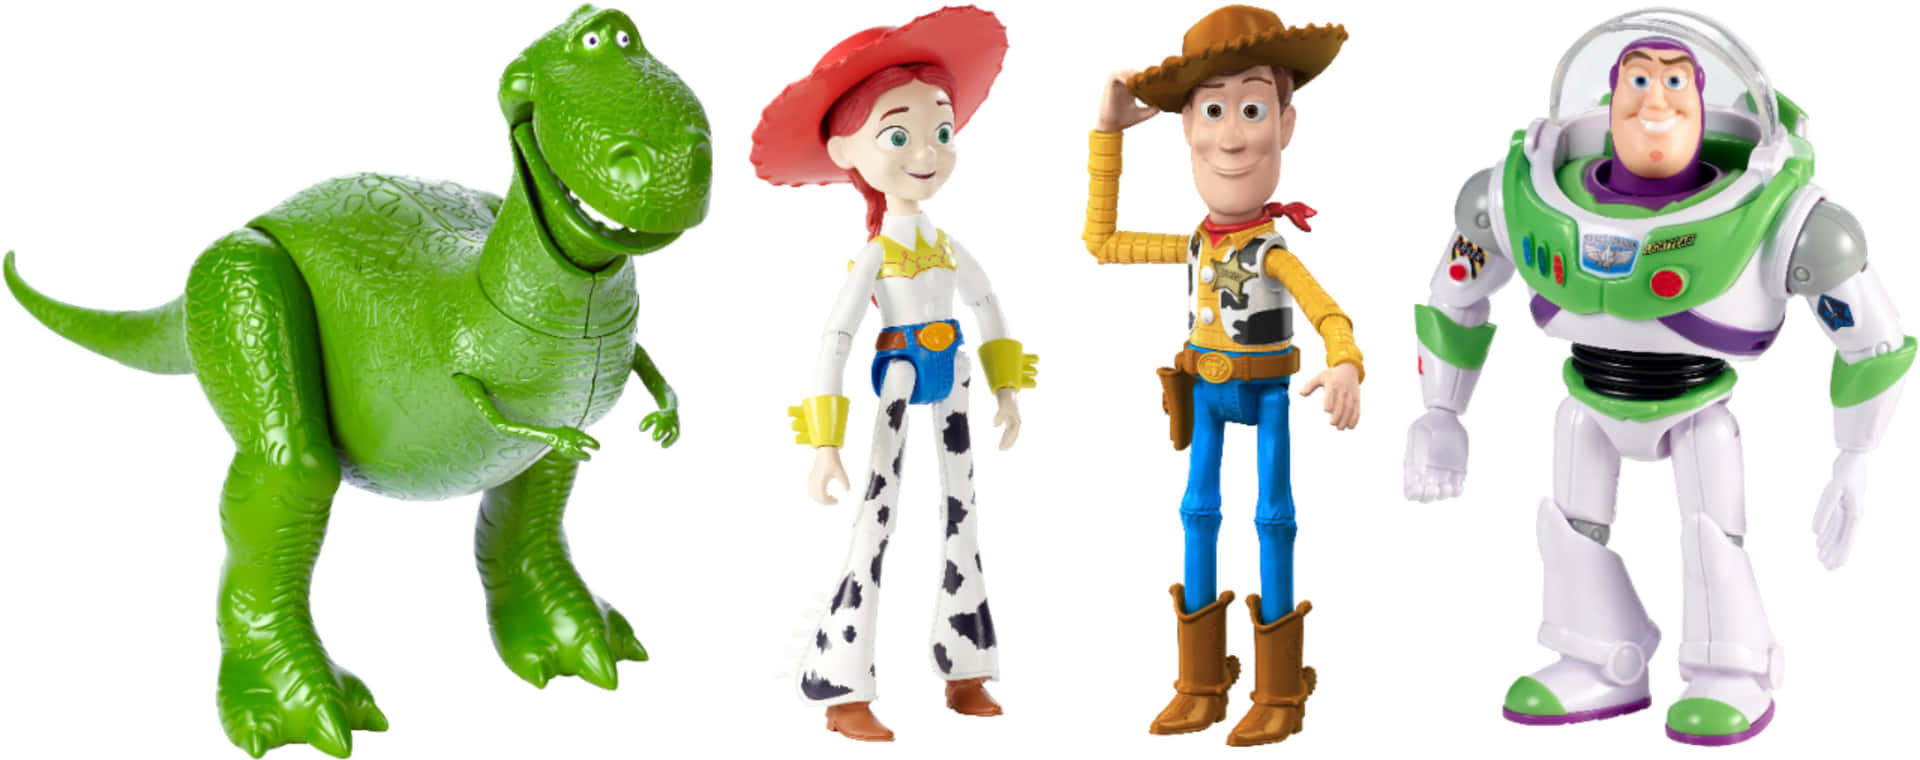 Woody,buzz Und Bo Peep Vereint In Der Welt Von Toy Story 4.